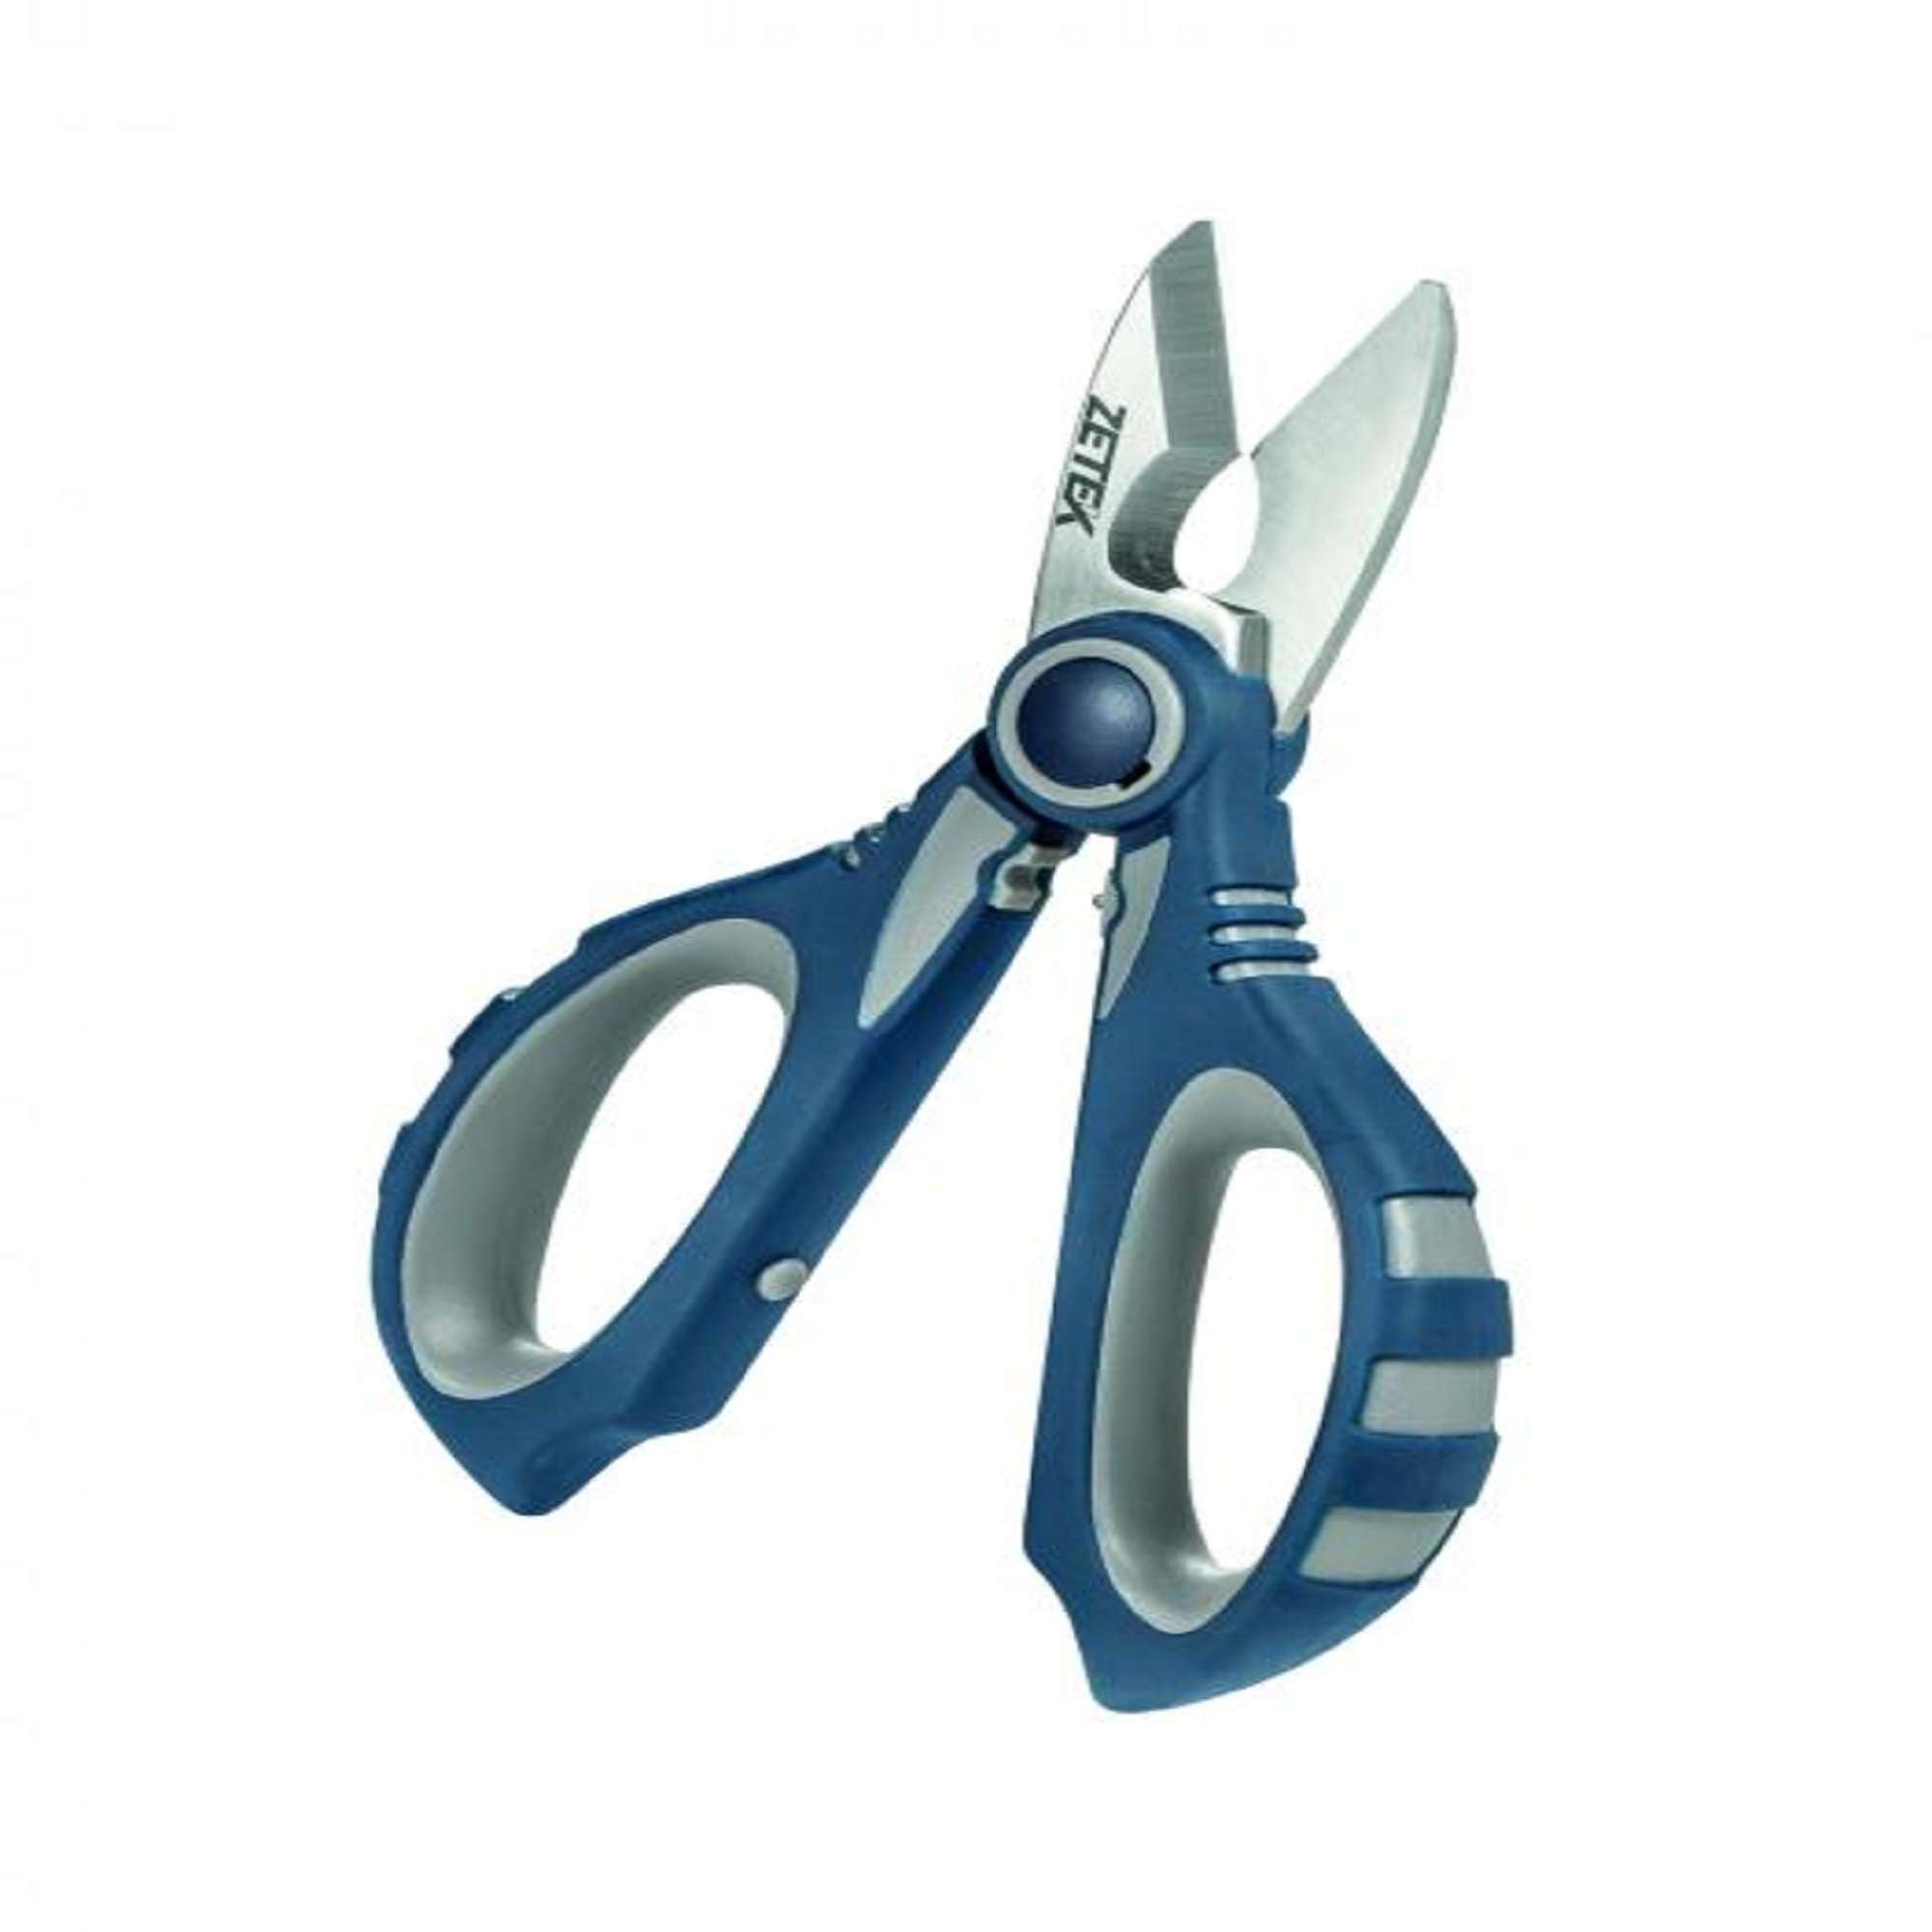 Multifunctional ergonomic scissors for electricians - Zeca KUT100